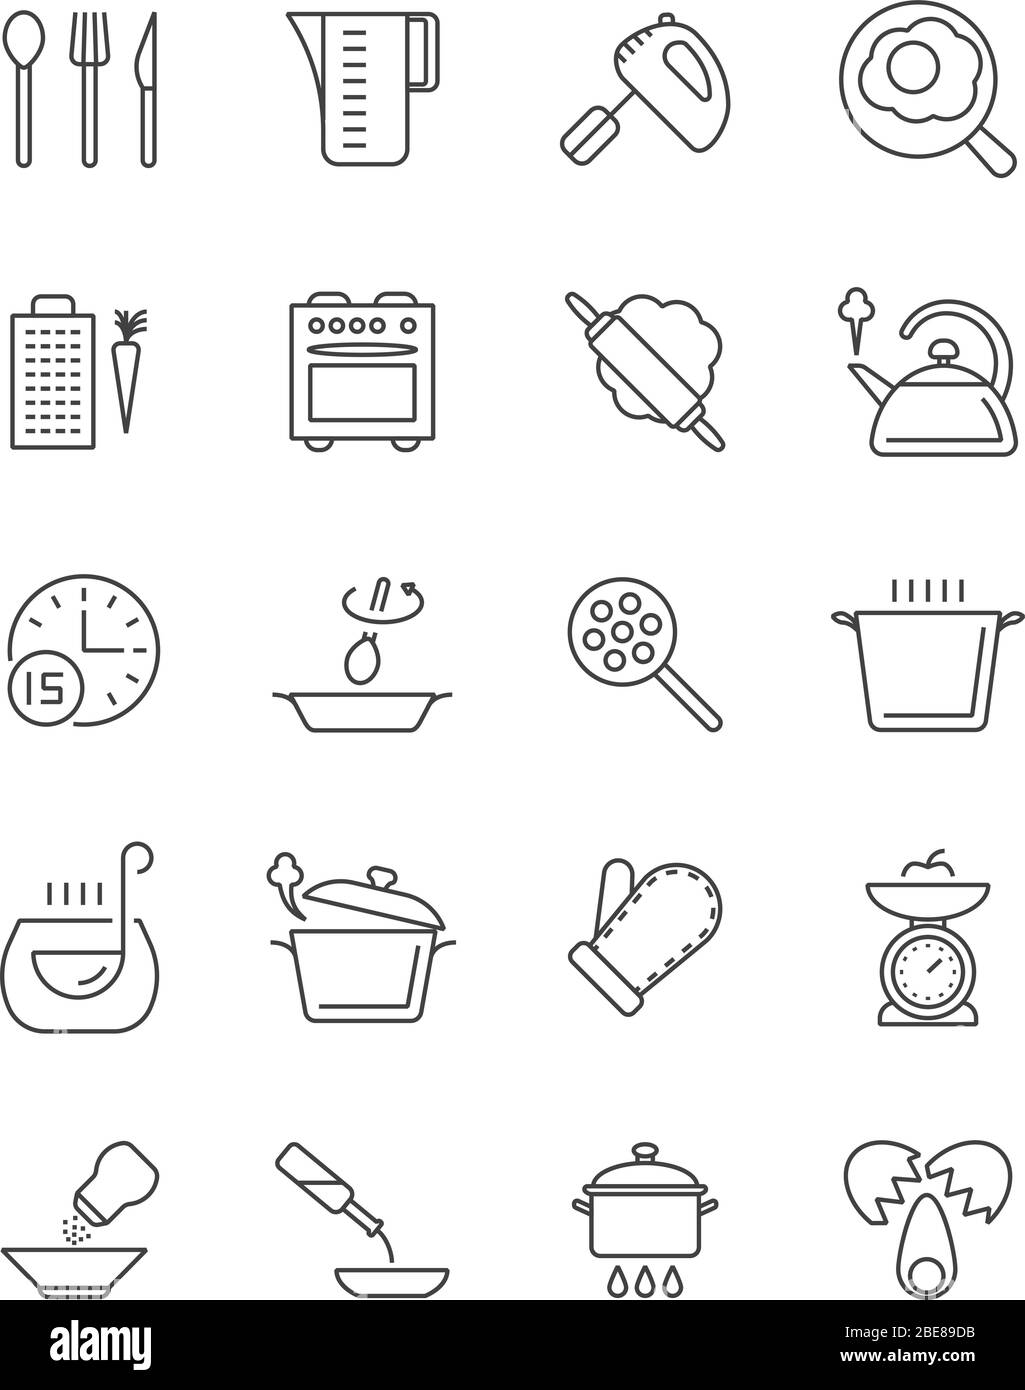 Cucina, preparazione del cibo e strumenti da cucina icone vettoriali. Illustrazione di pentole e forcelle per utensili da cucina e utensili da cucina Illustrazione Vettoriale